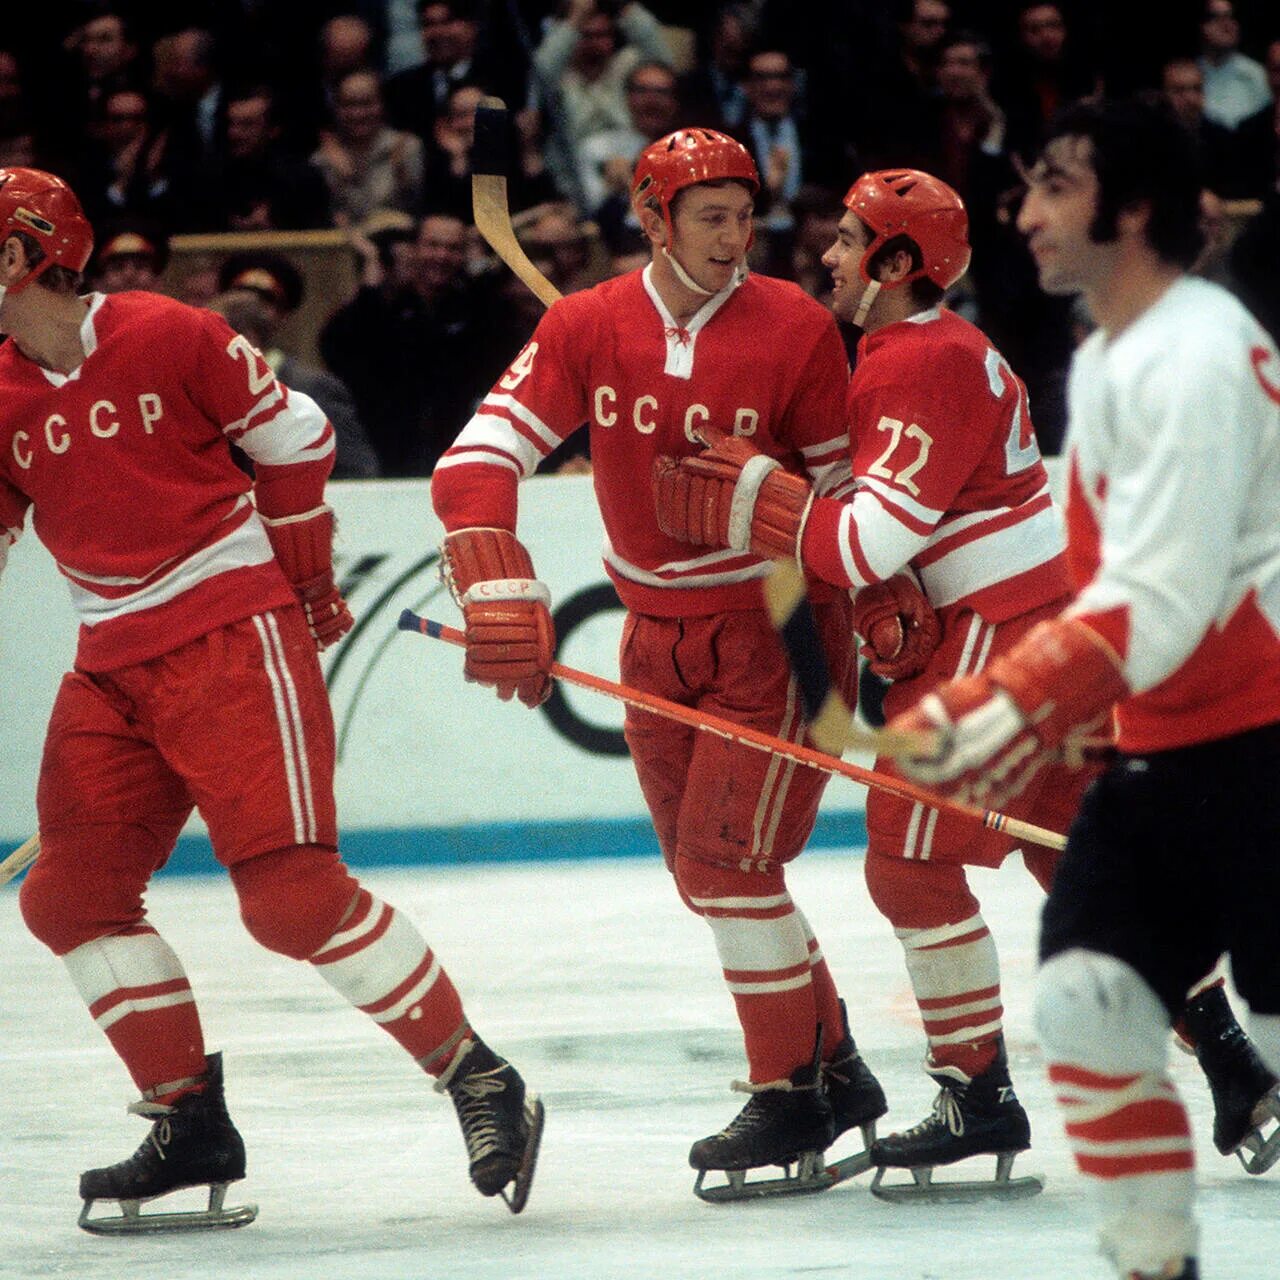 Харламов суперсерия 1972. Третьяк суперсерия 1972. Хоккейная суперсерия СССР Канада 1972.